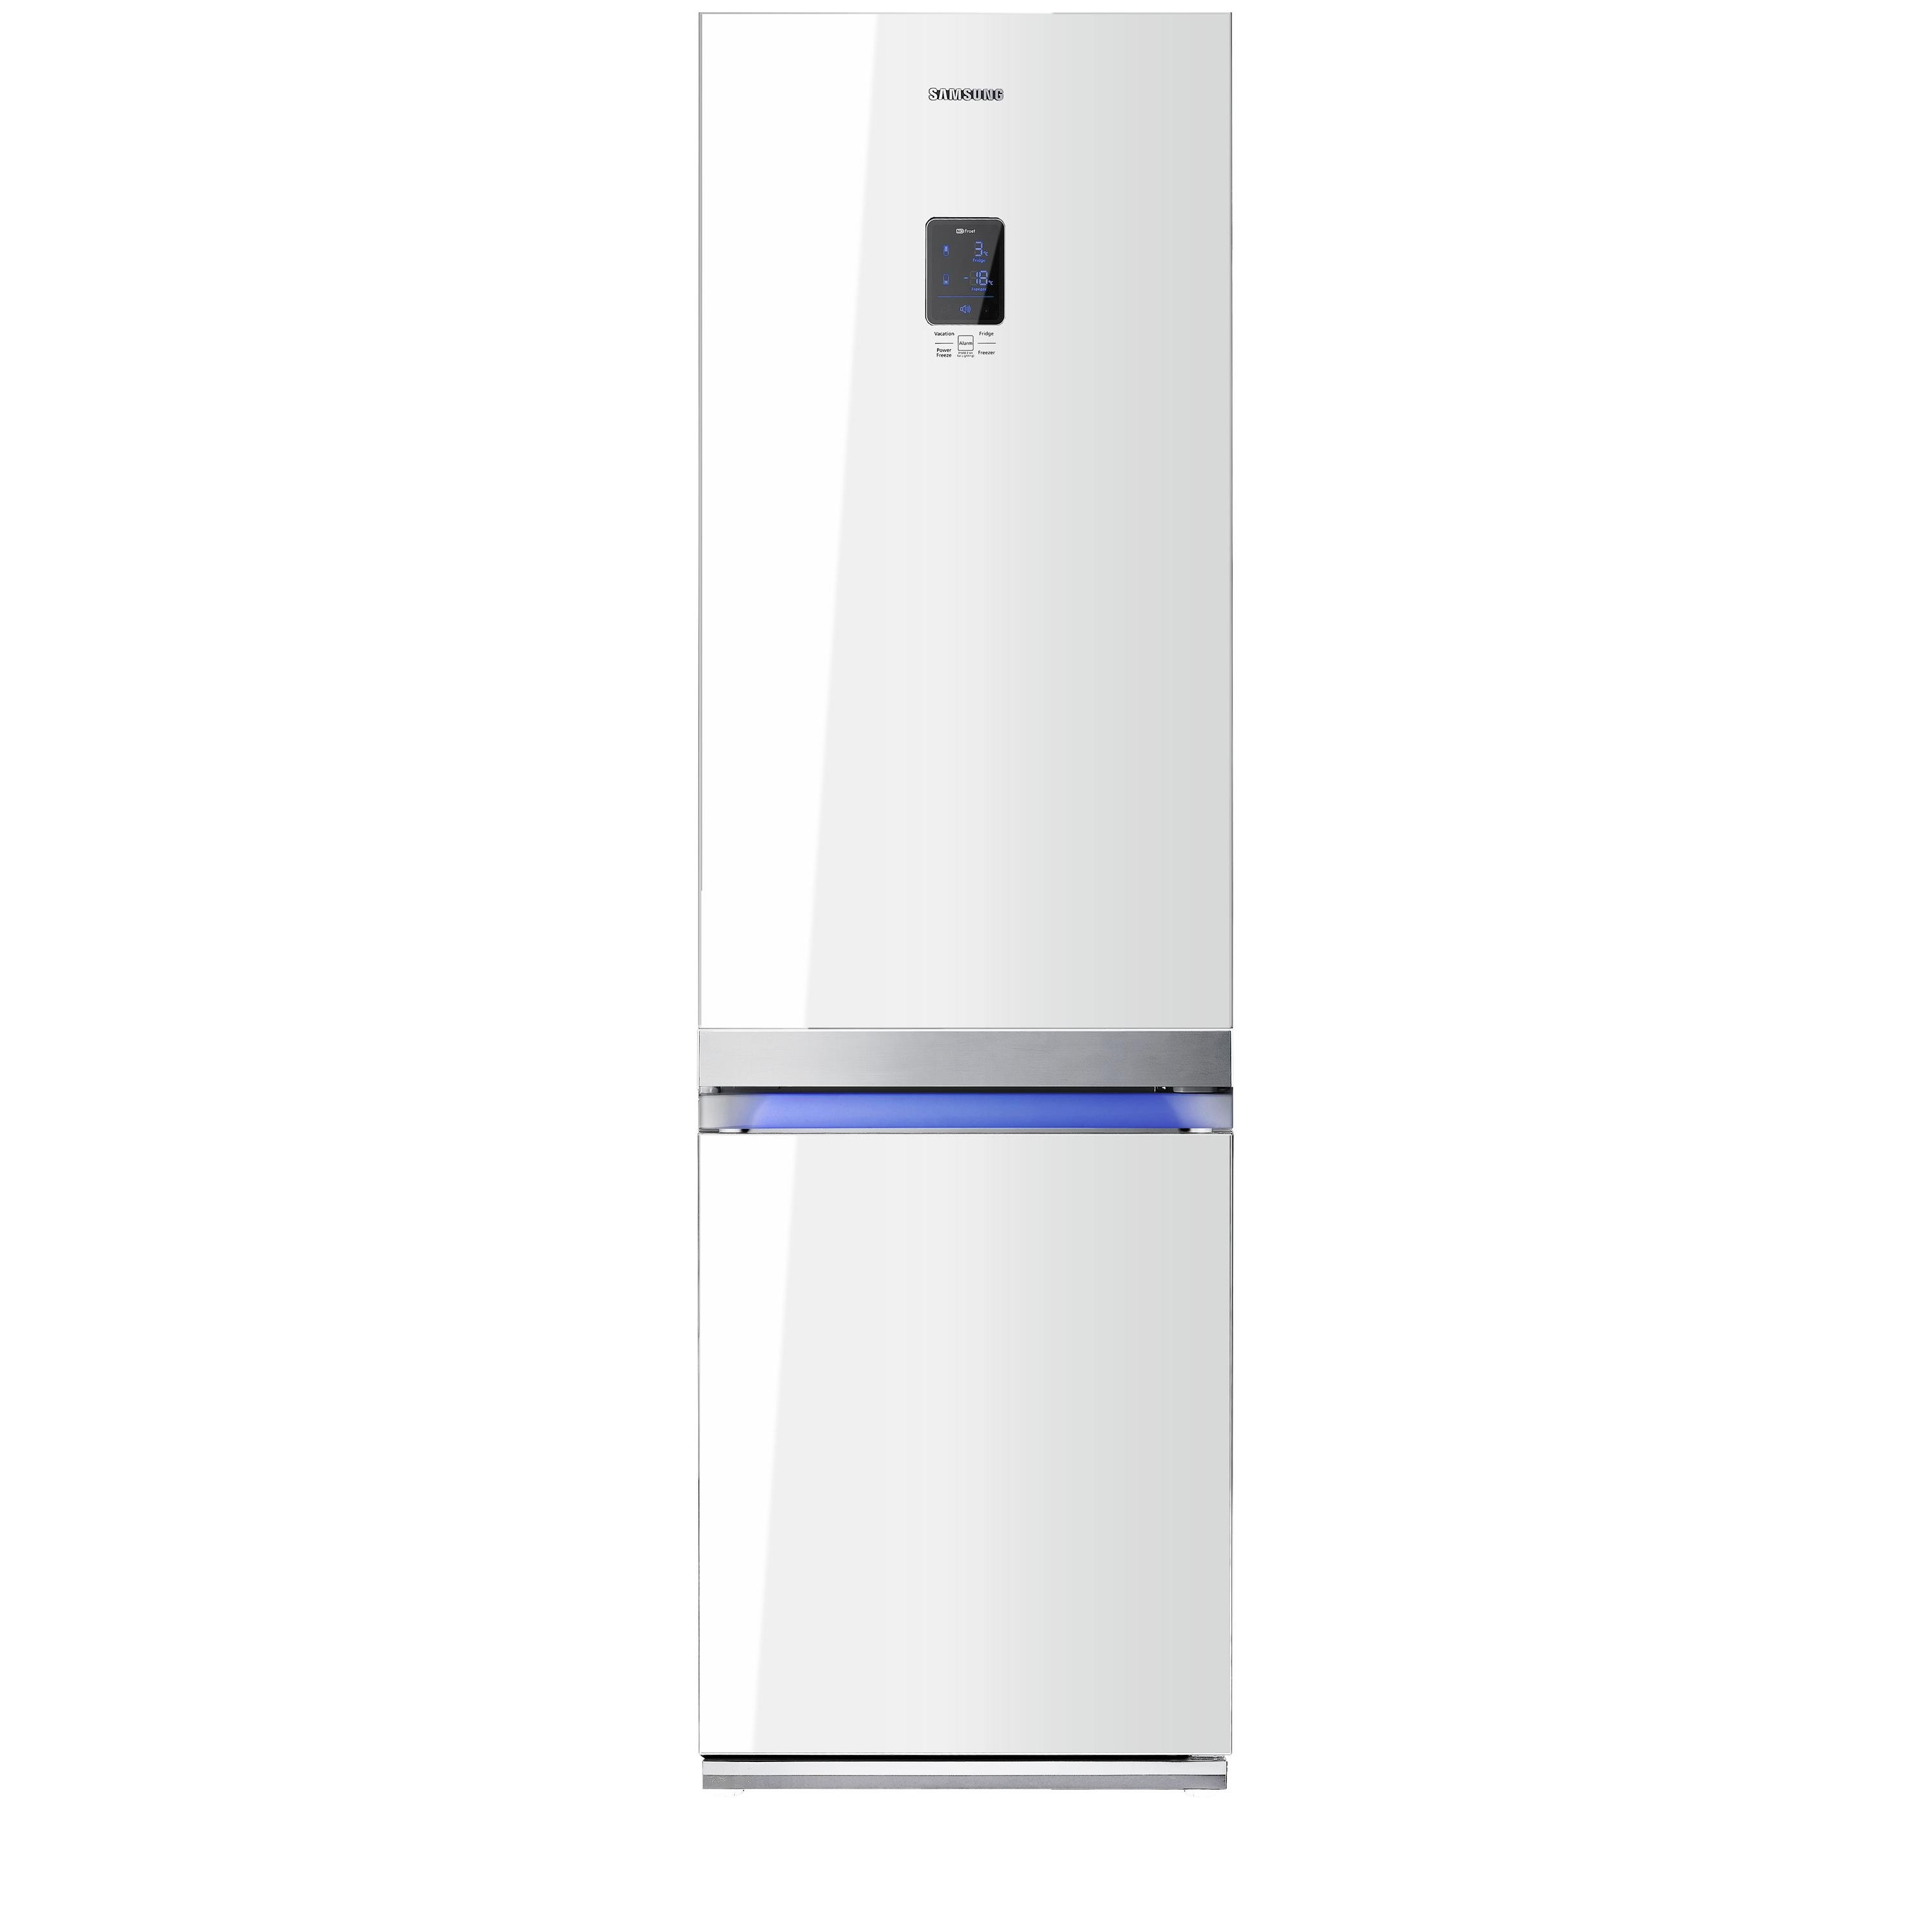 Купить холодильник в алматы. Холодильник Samsung rl55. Холодильник Samsung RL-55 tte1l. Холодильник самсунг RL 55. Холодильник Samsung RL-55 VTEBG.